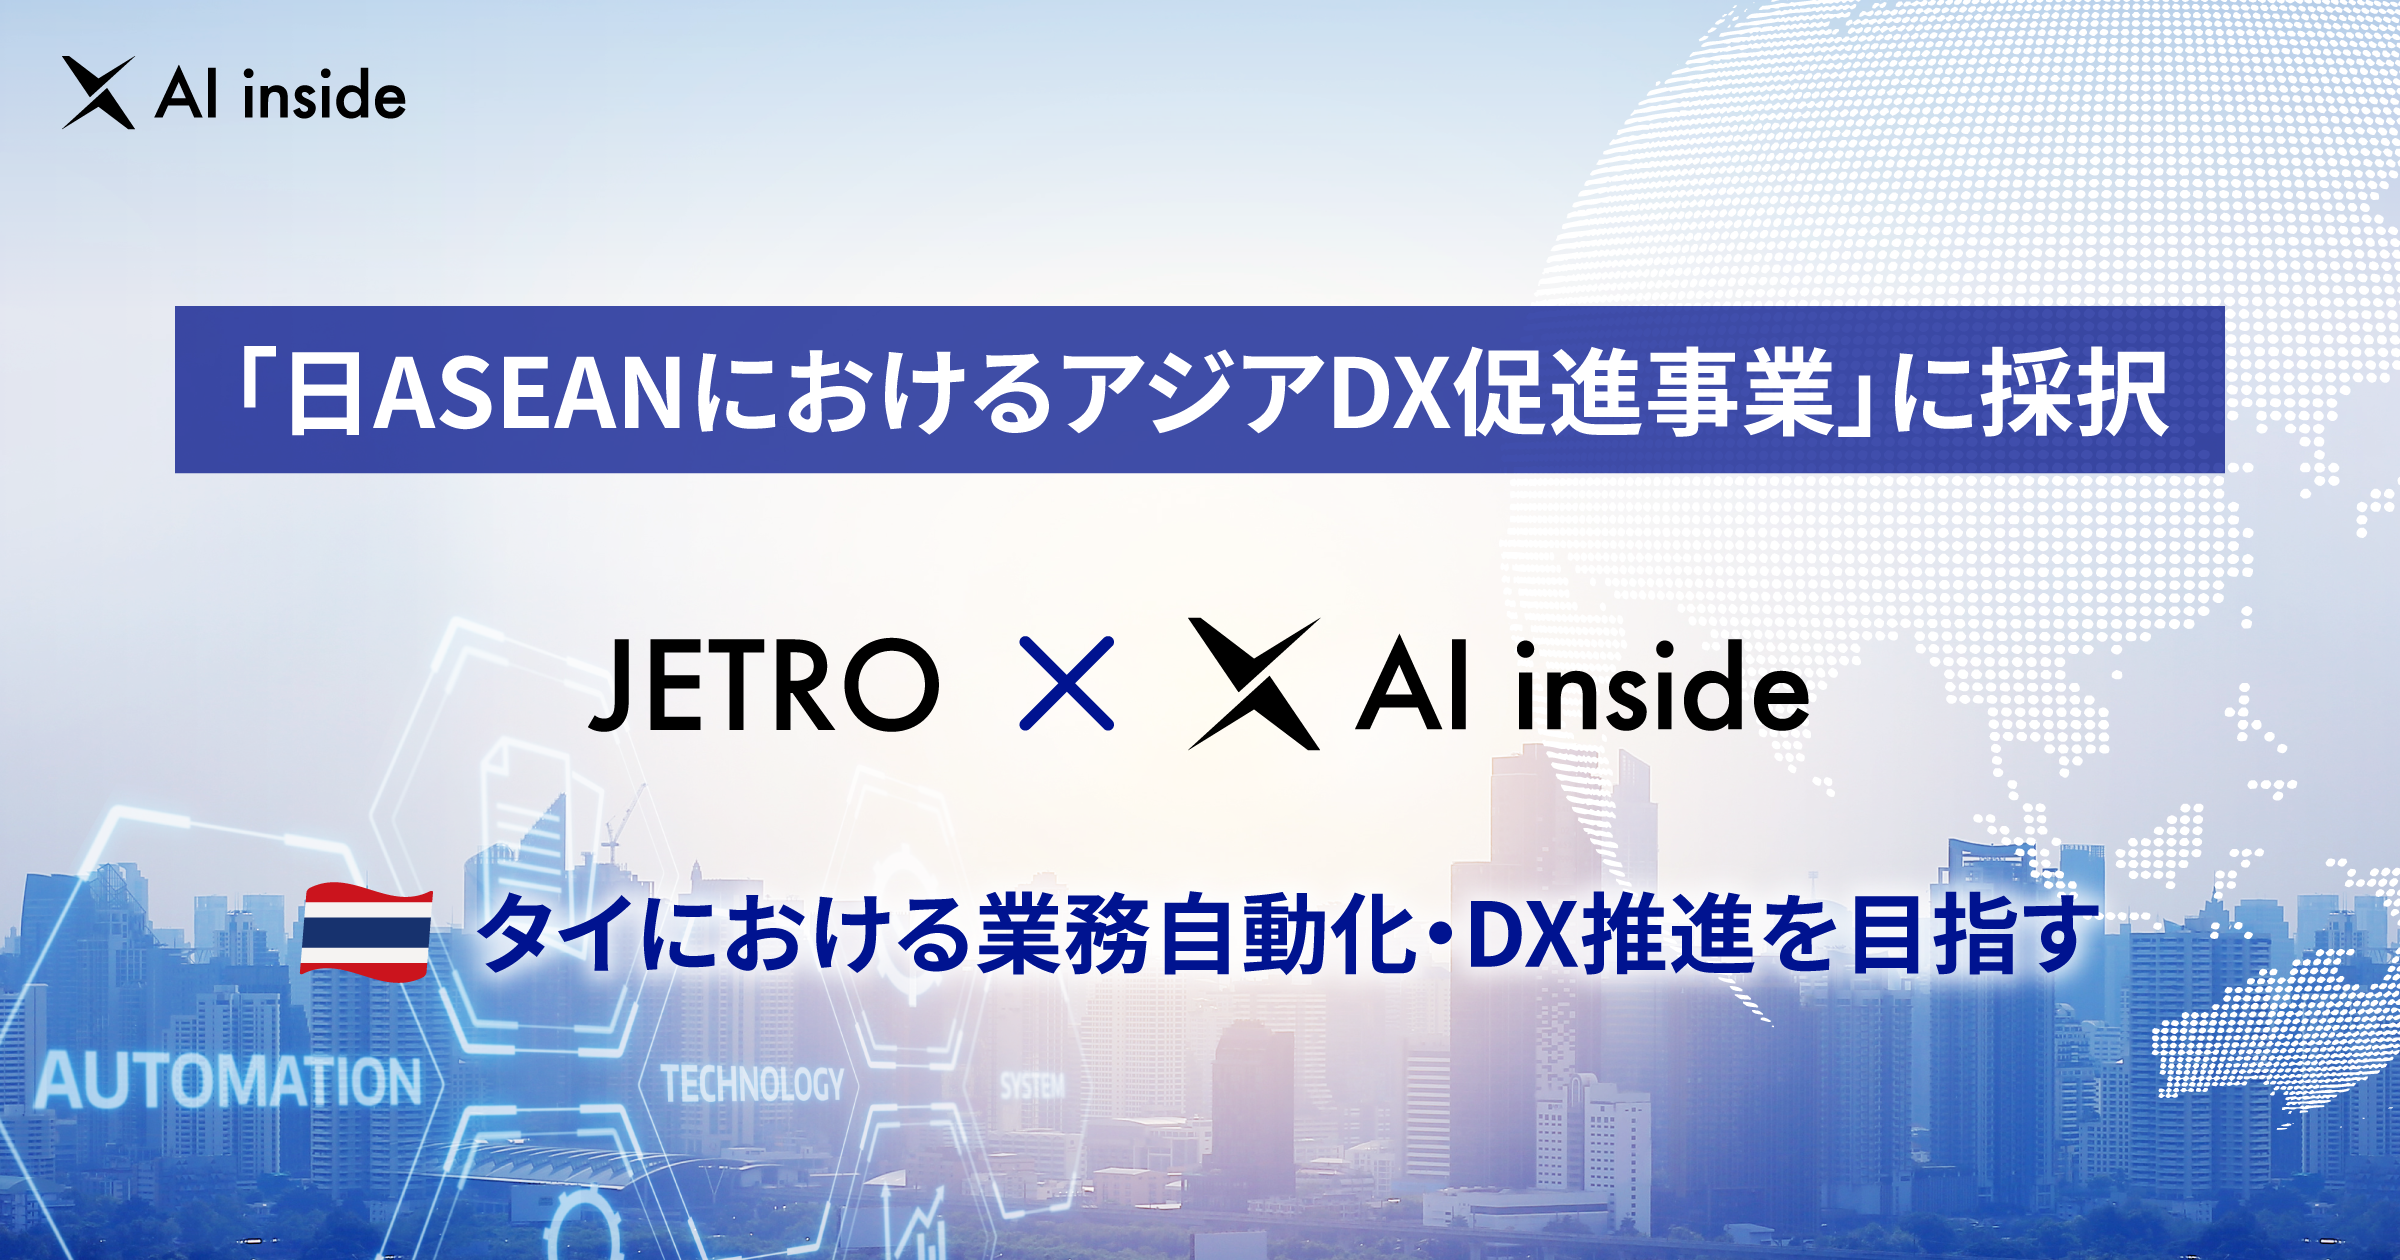 AI inside、JETRO「日ASEANにおけるアジアDX促進事業」に採択、タイにおける業務自動化・DX推進を目指す